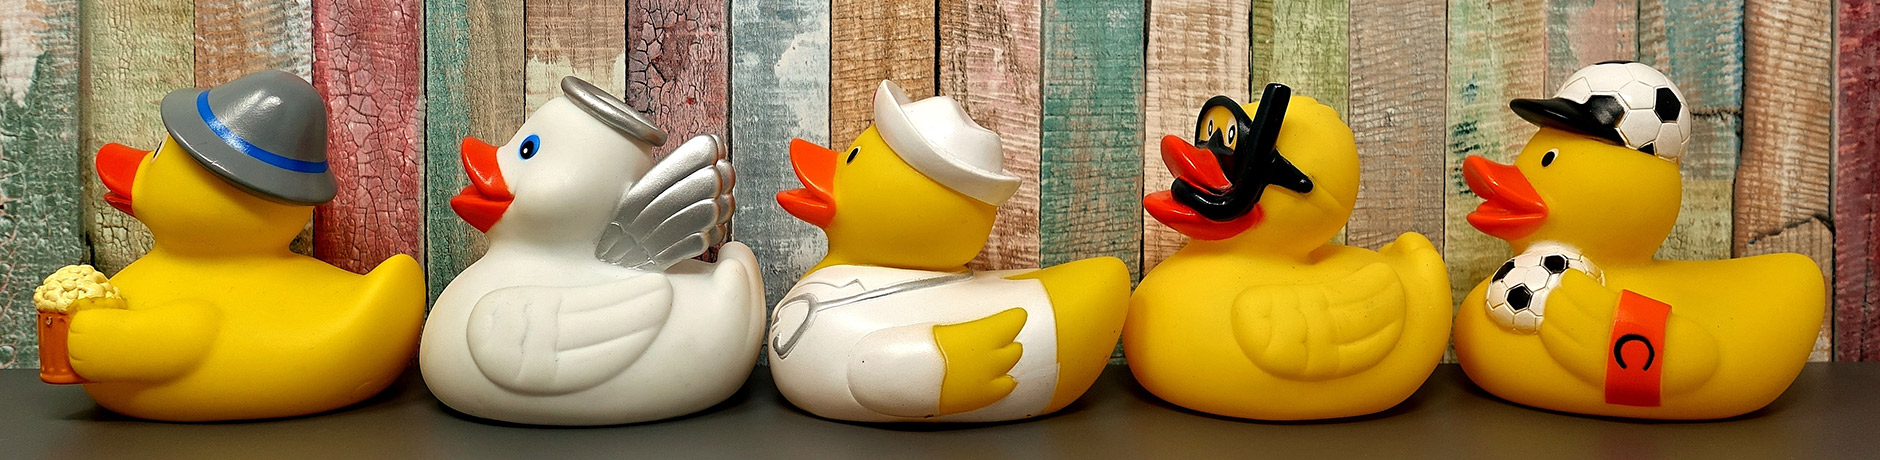 rubber-ducks-3412065.jpg